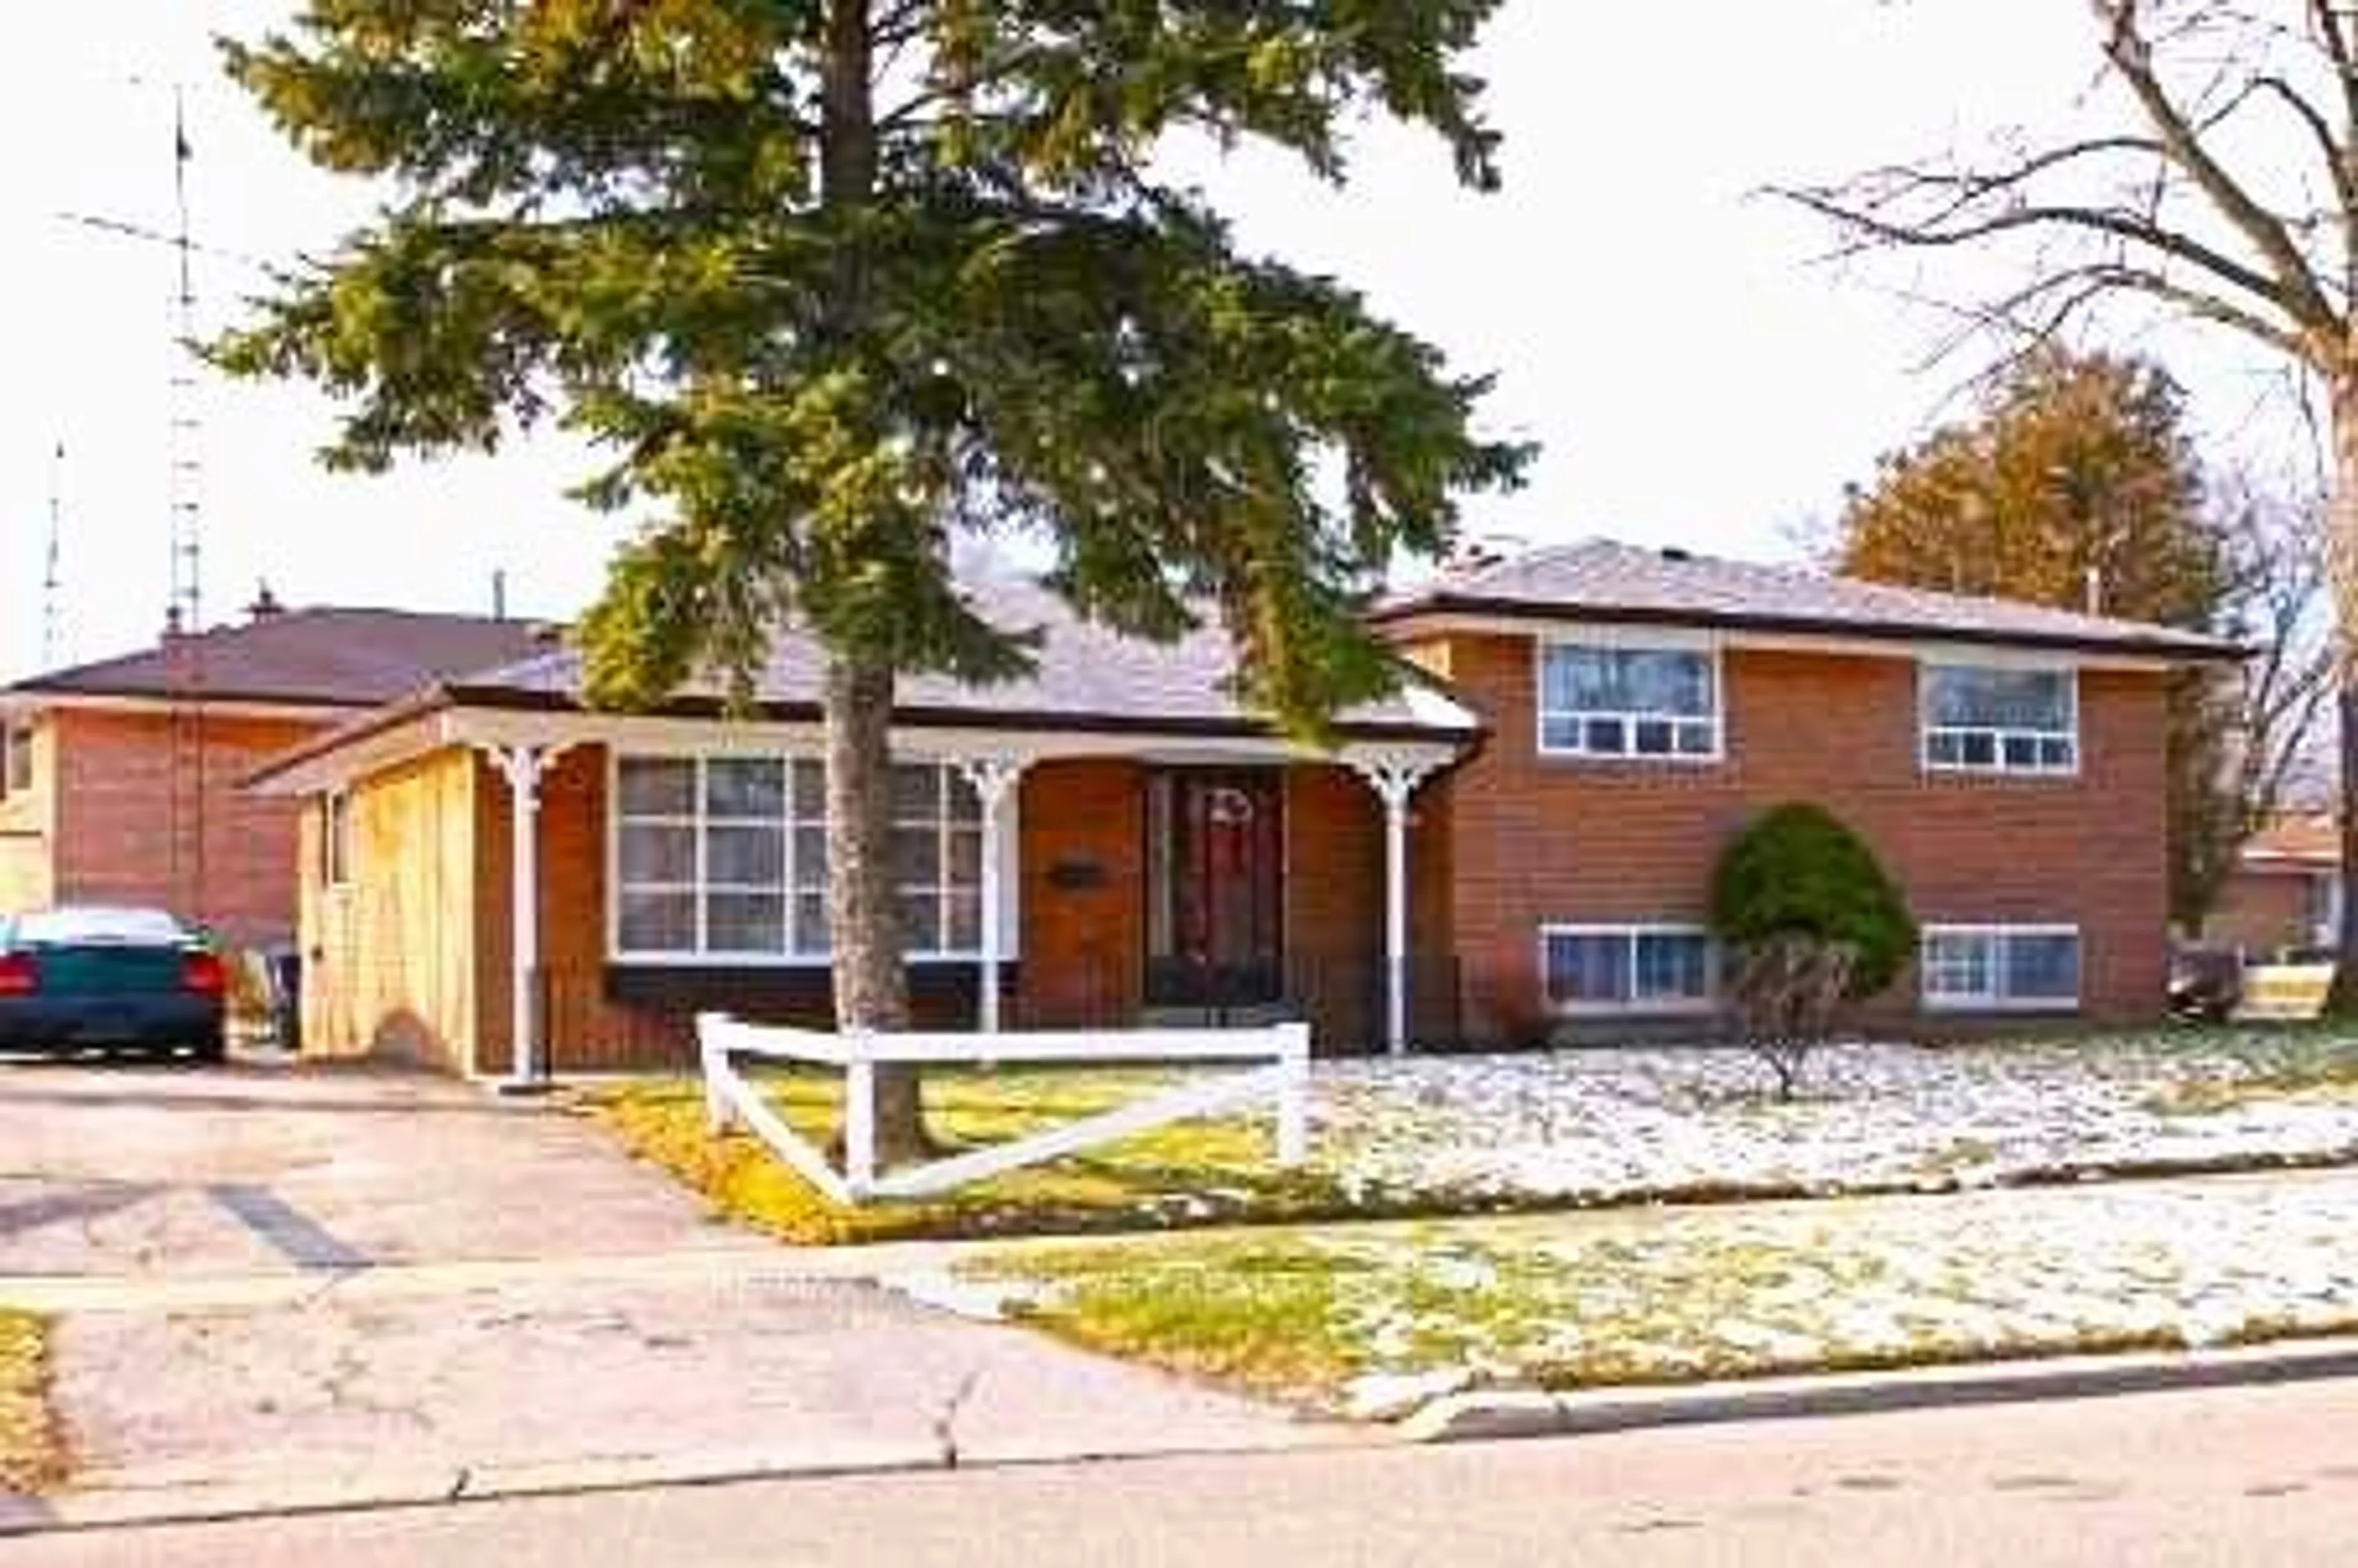 Home with brick exterior material for 62 Syracuse Cres, Toronto Ontario M1E 2G6